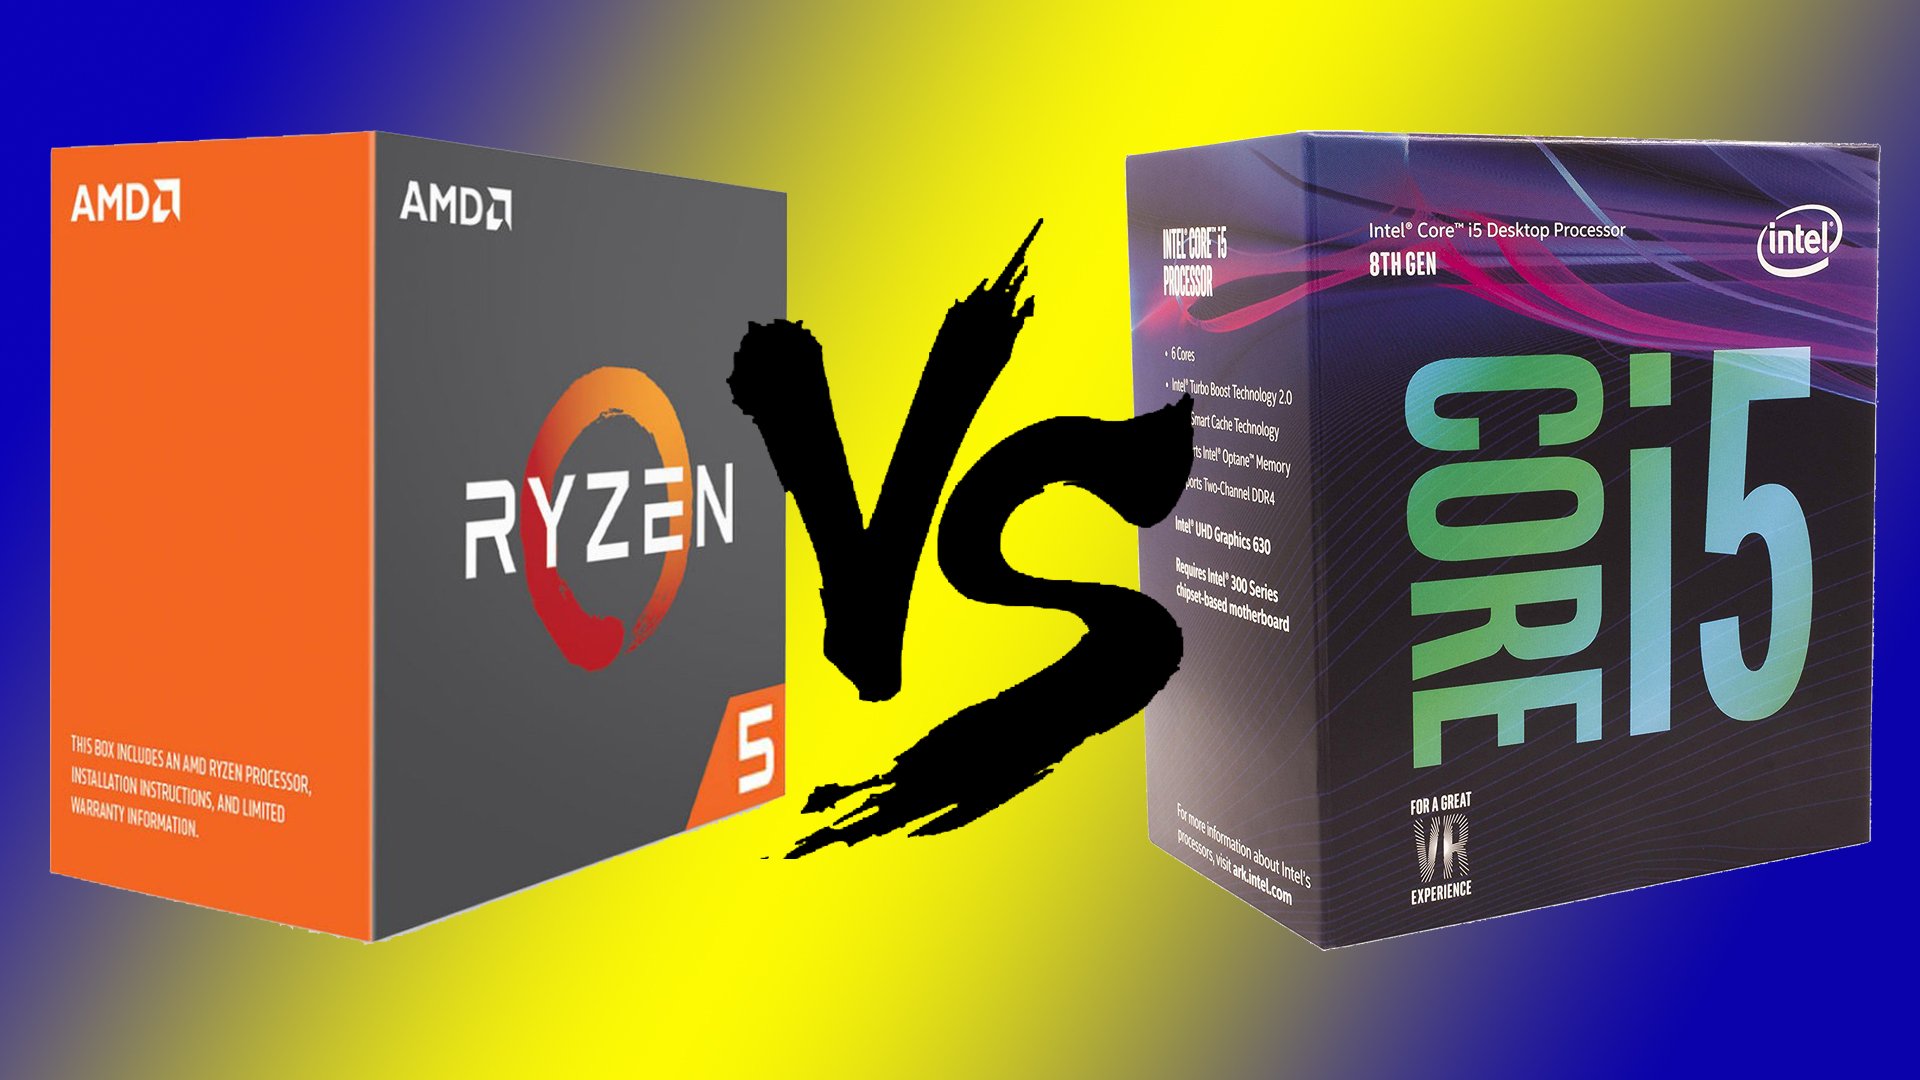 Ryzen 5 1600 ve Core i5 8400 Karşılaştırması - Technopat